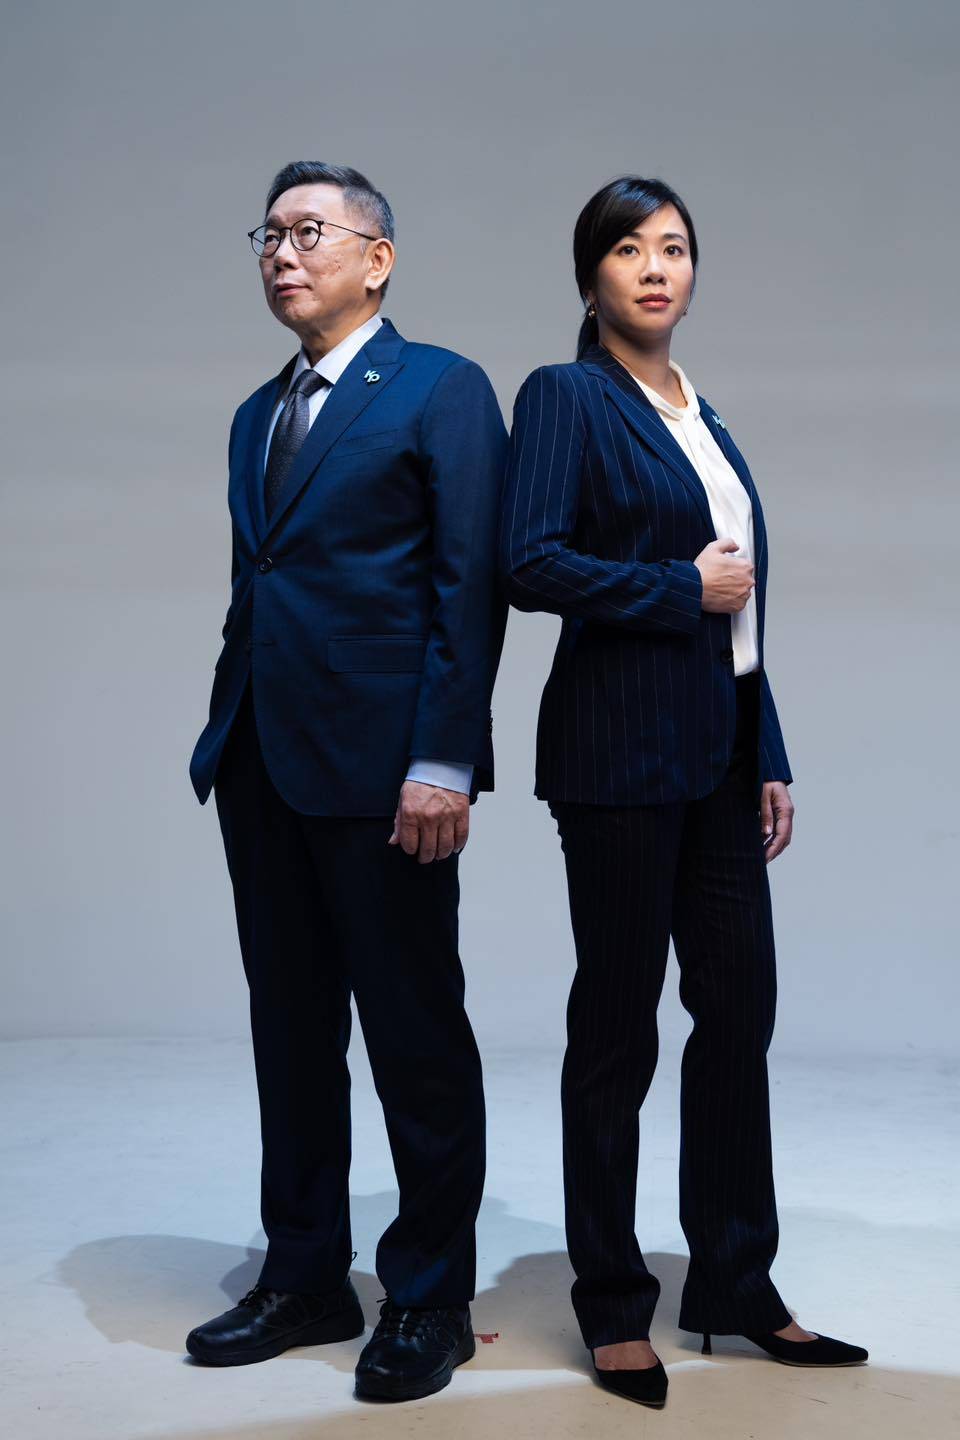 民眾黨的總統參選人搭檔吳欣盈，在性別上有互補作用。(圖源：instagram)